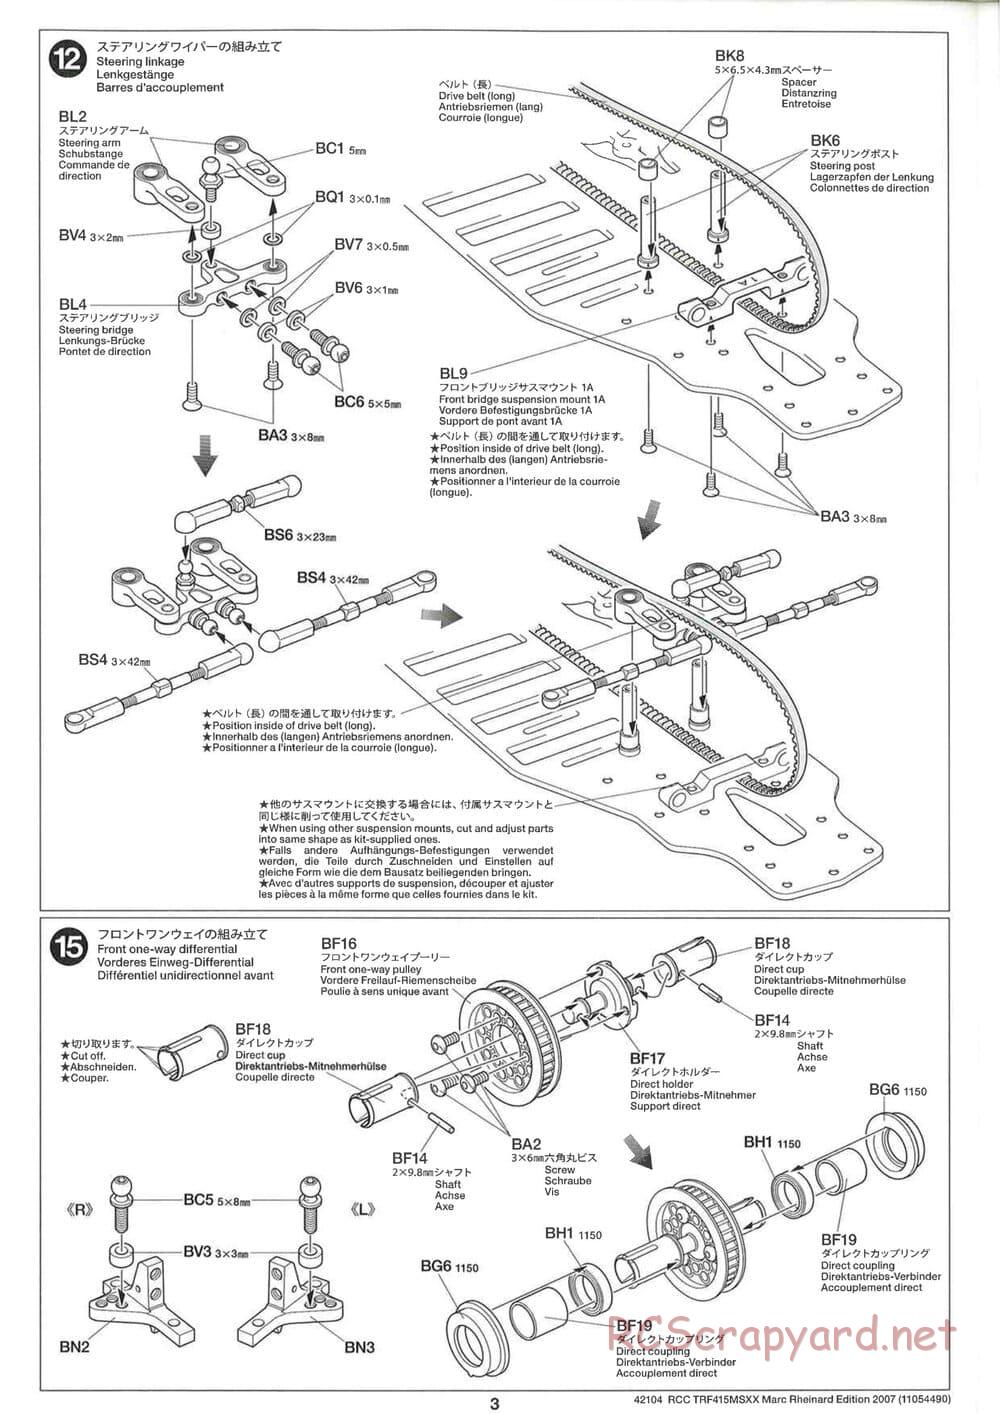 Tamiya - TRF415 MSXX - Marc Rheinard Edition 2007 Chassis - Manual - Page 3